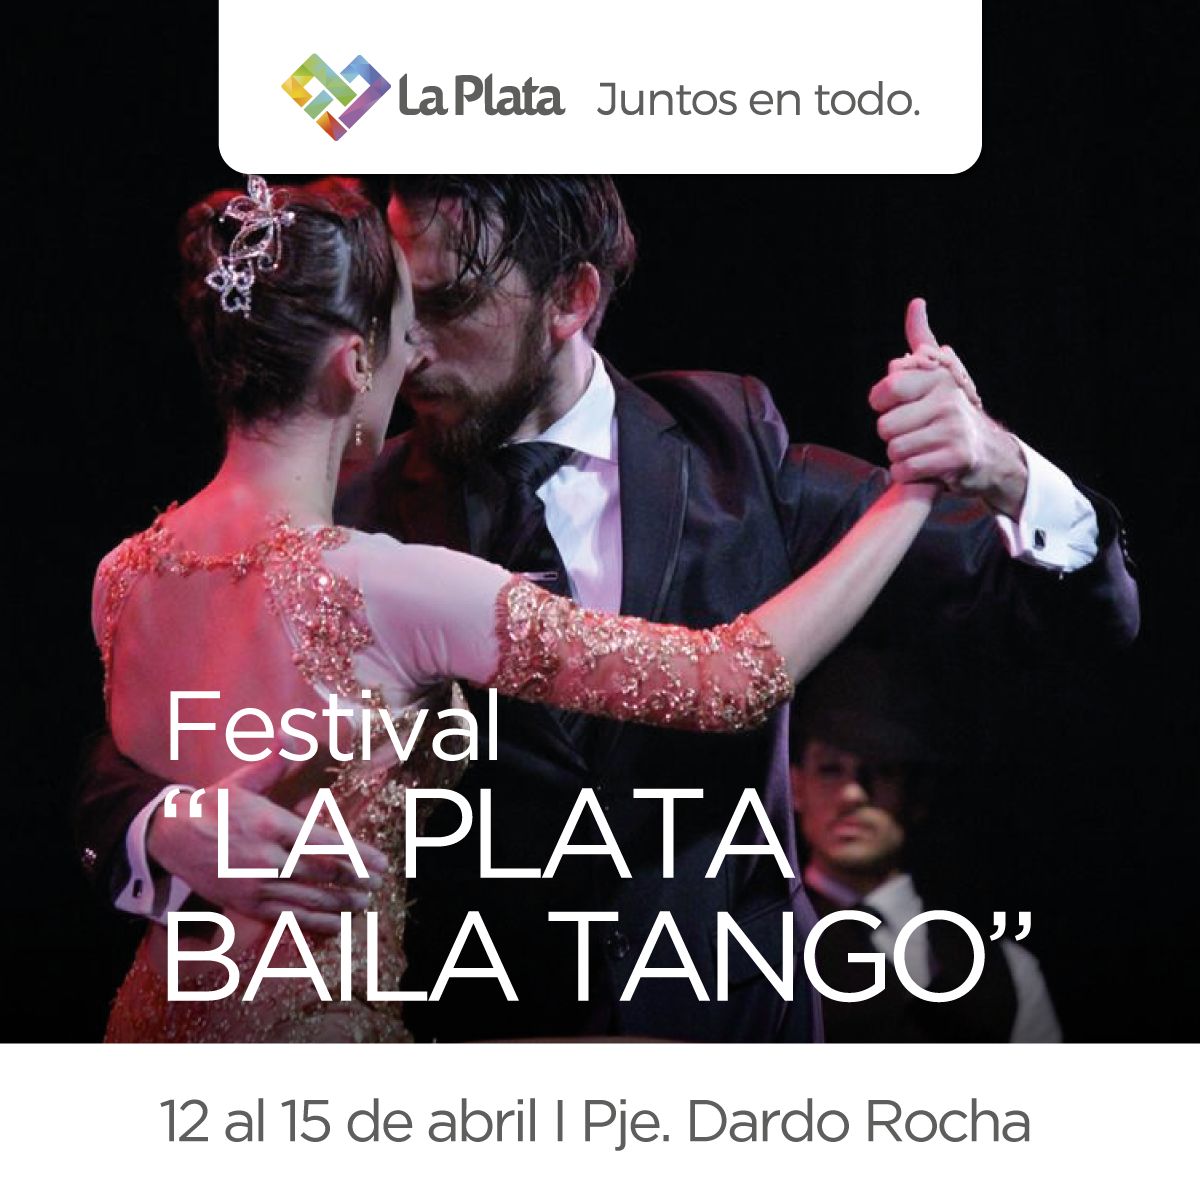 Cuarta edición del Festival "La Plata Baila Tango"